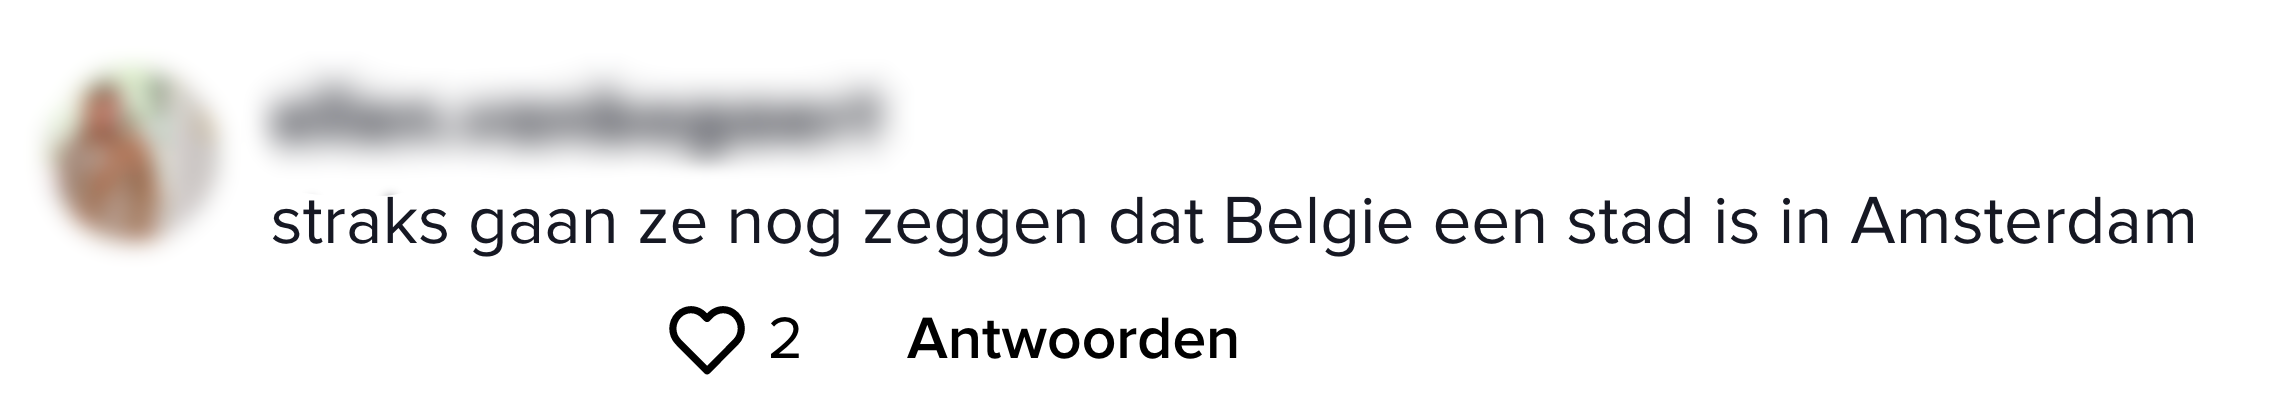 Straks gaan ze nog zeggen dat België een stad is in Amsterdam